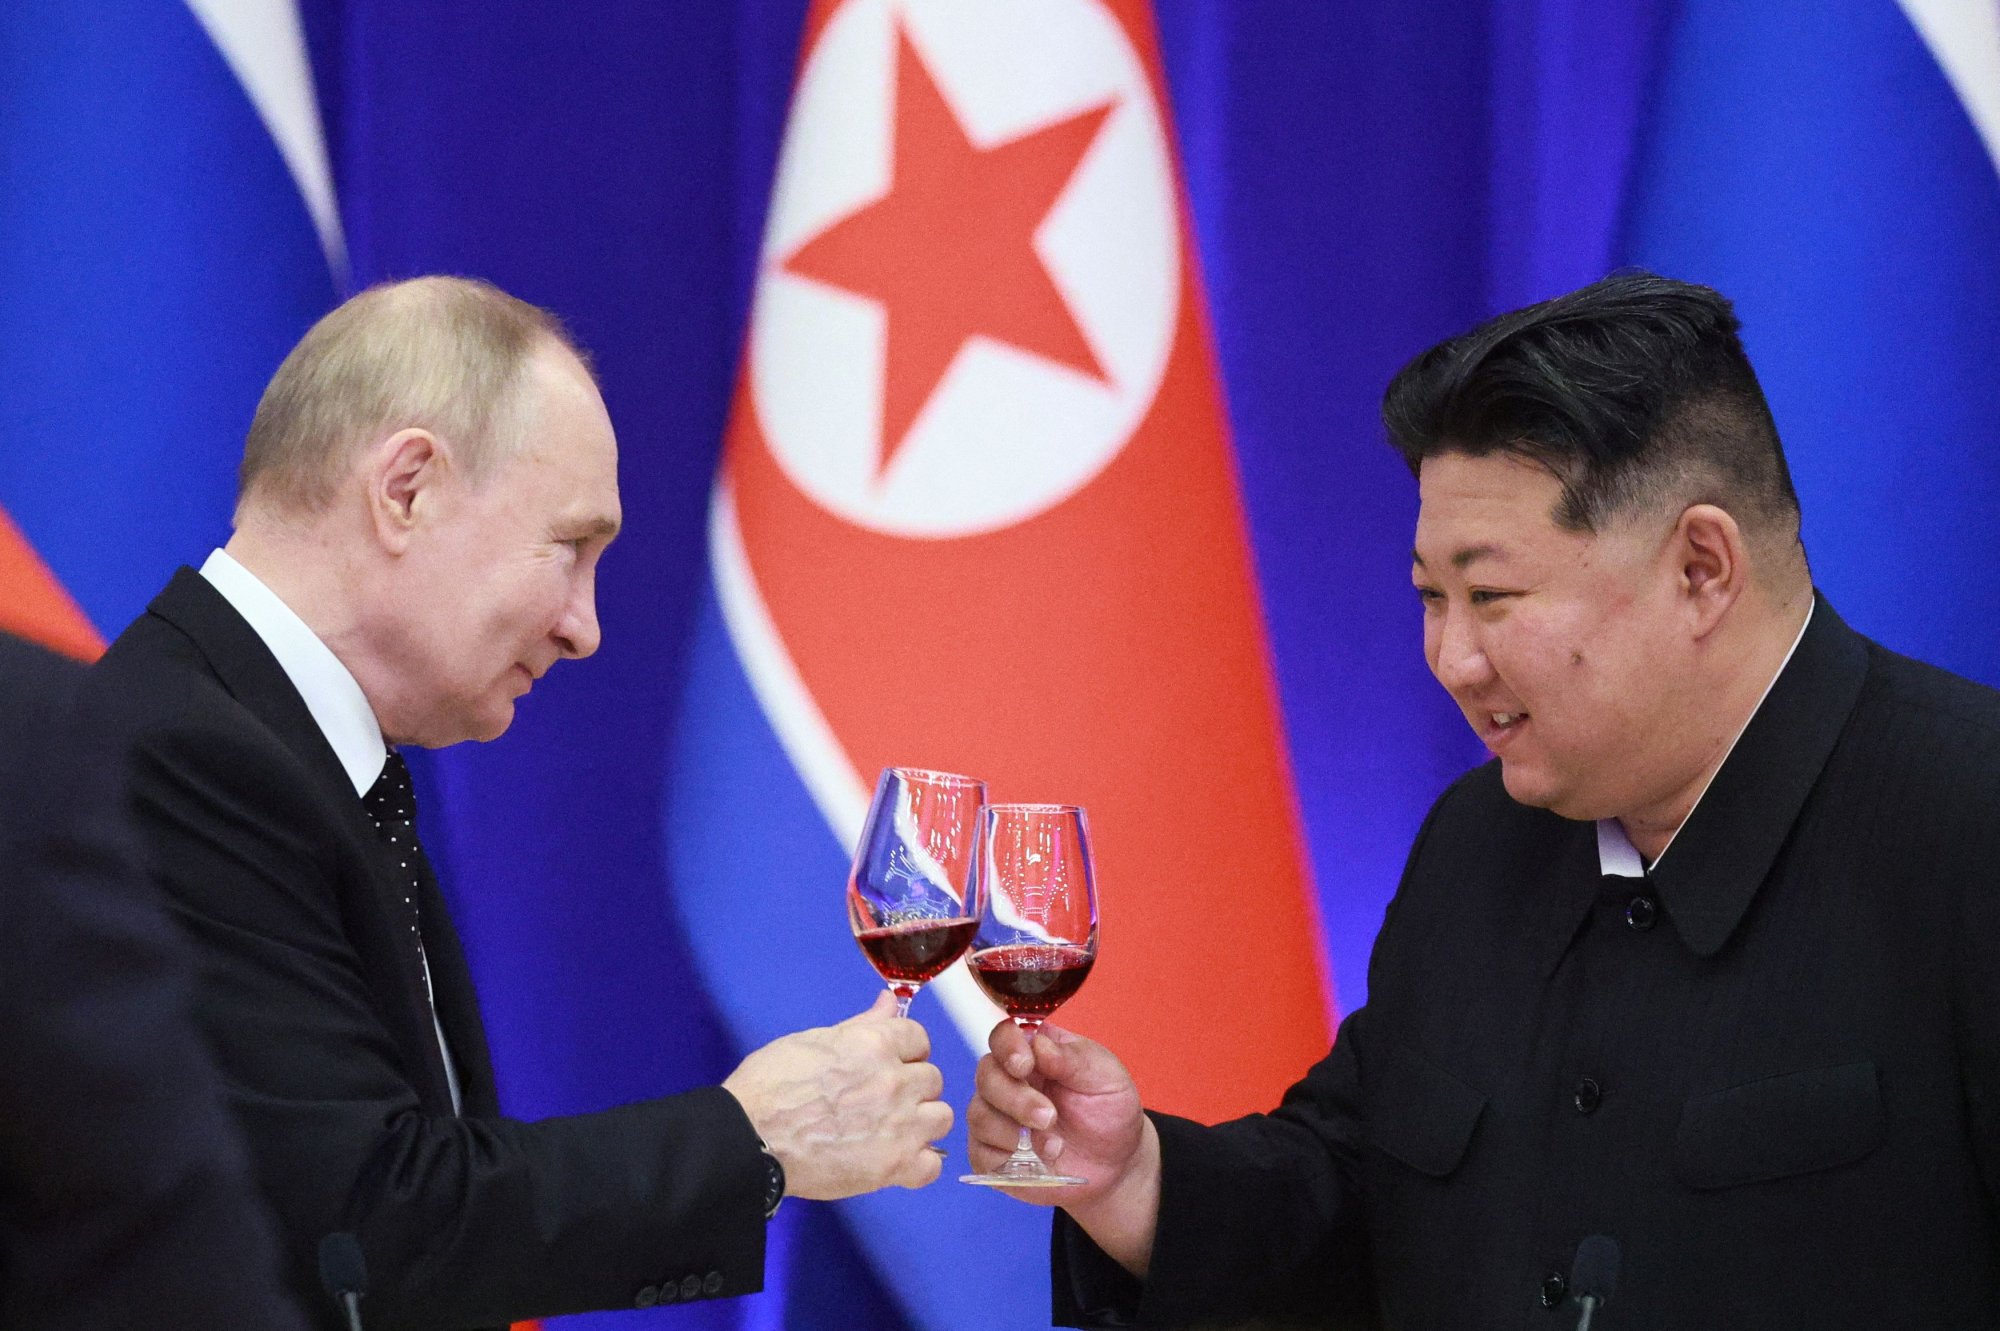 Πούτιν: Τι ήθελε να πετύχει με την επίσκεψη στη Βόρεια Κορέα - Τα μηνύματα και τα κέρδη